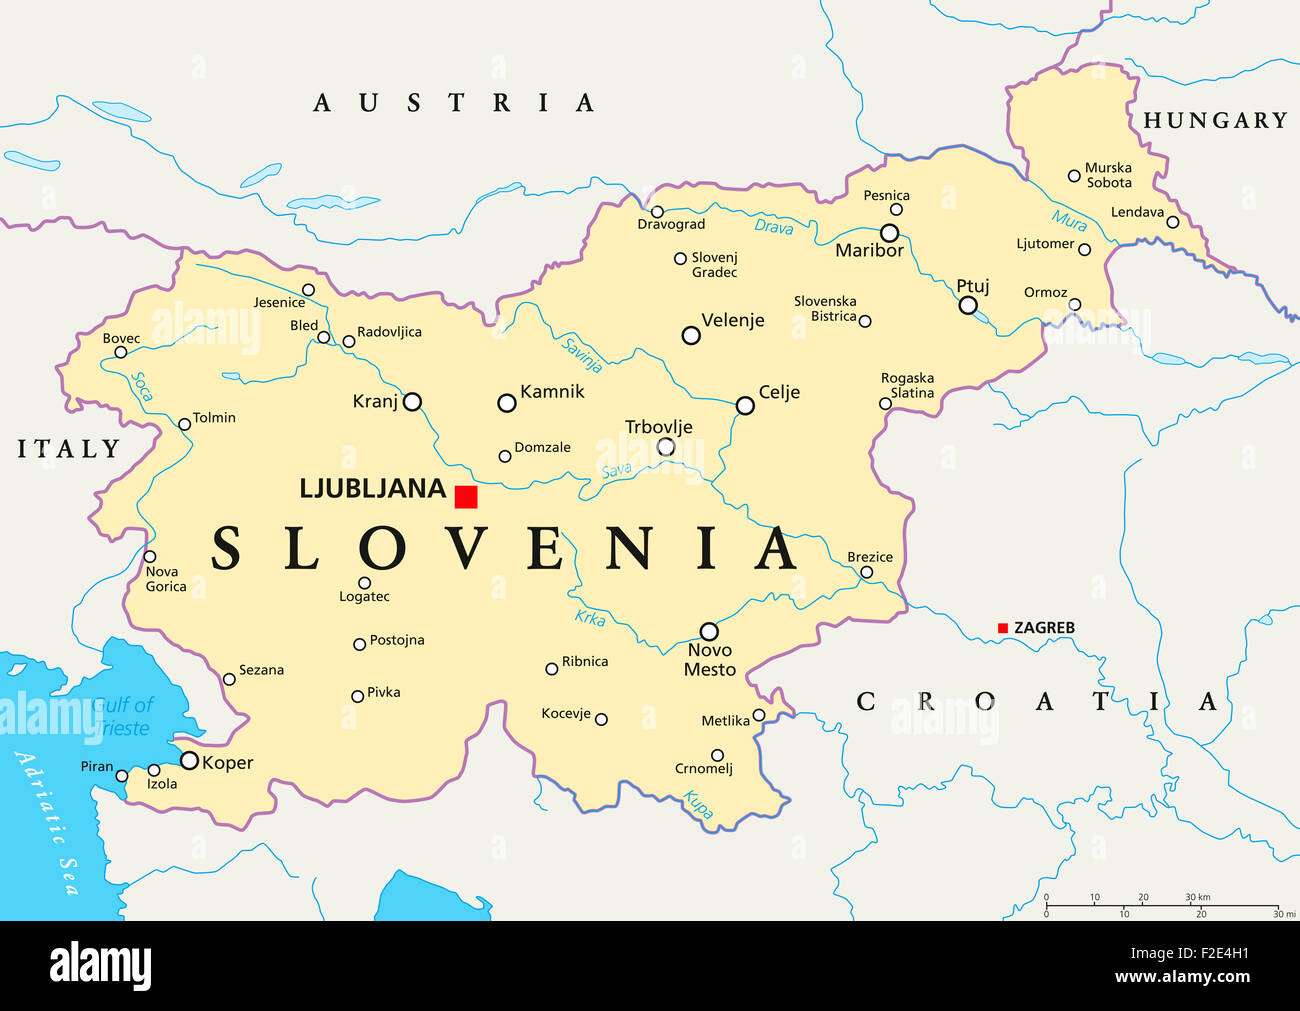 Mappa slovenia immagini e fotografie stock ad alta risoluzione - Alamy